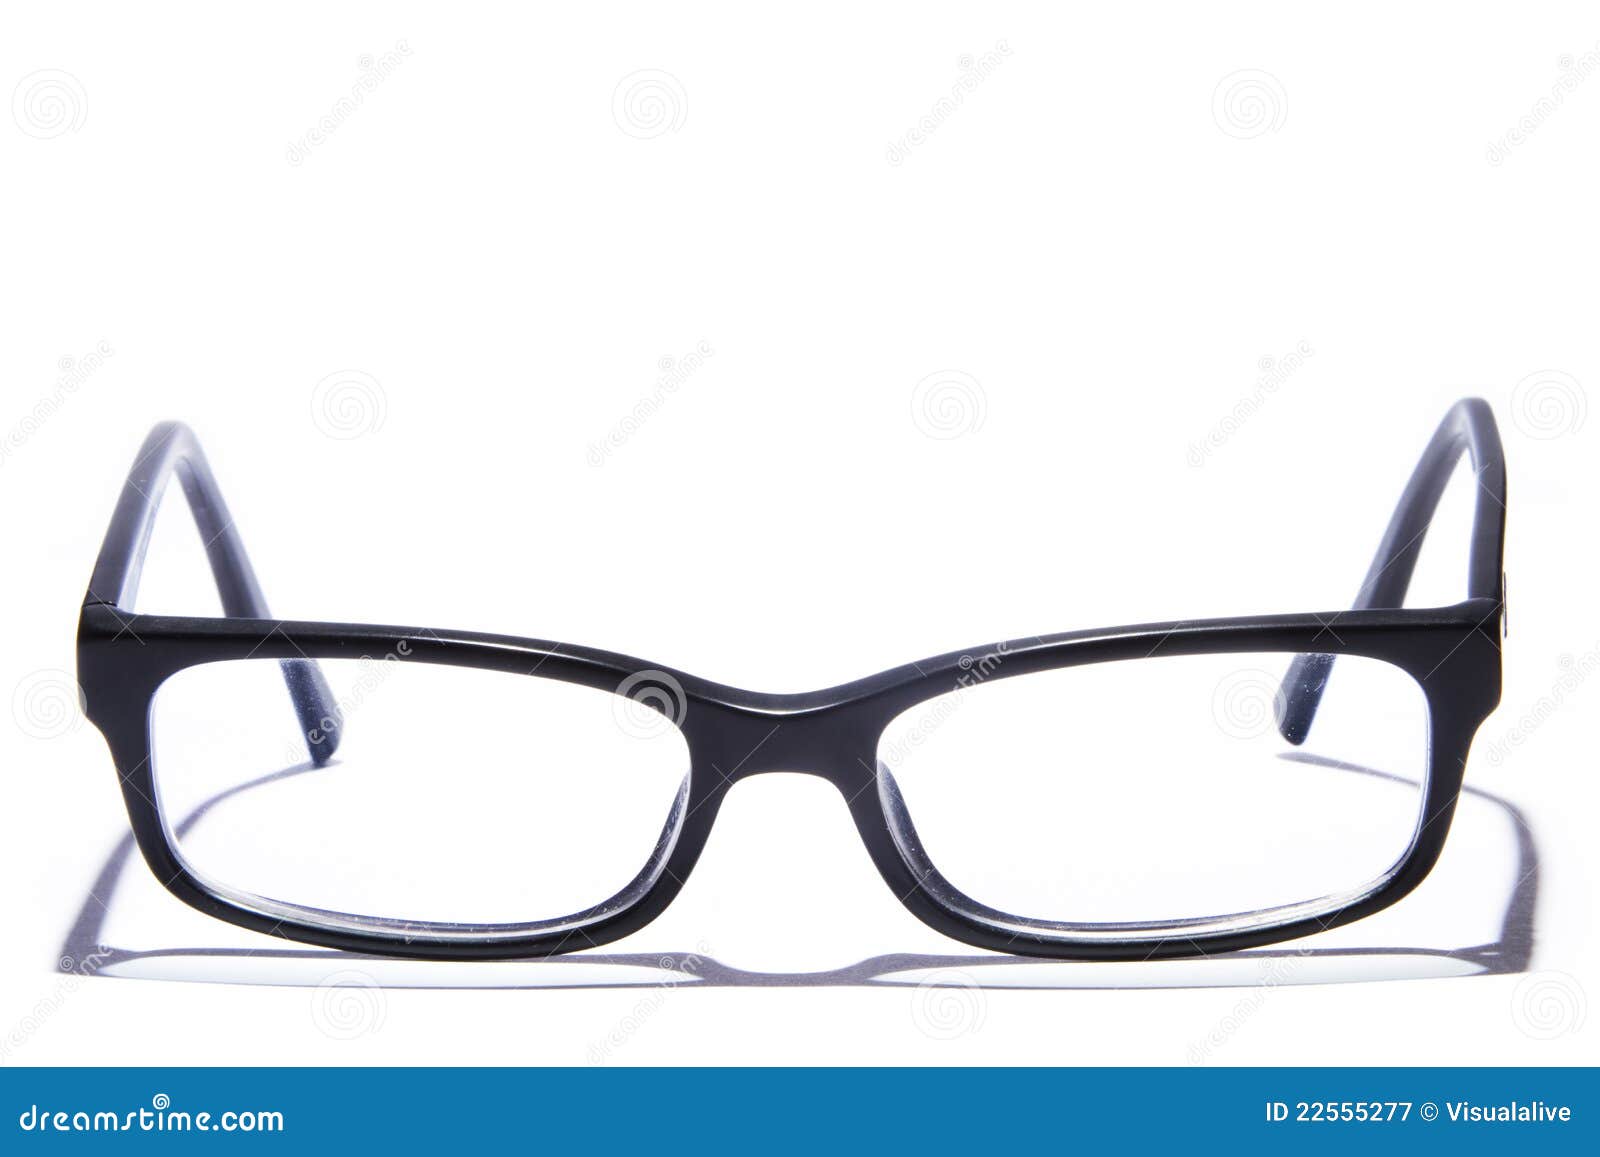 glasses  on white